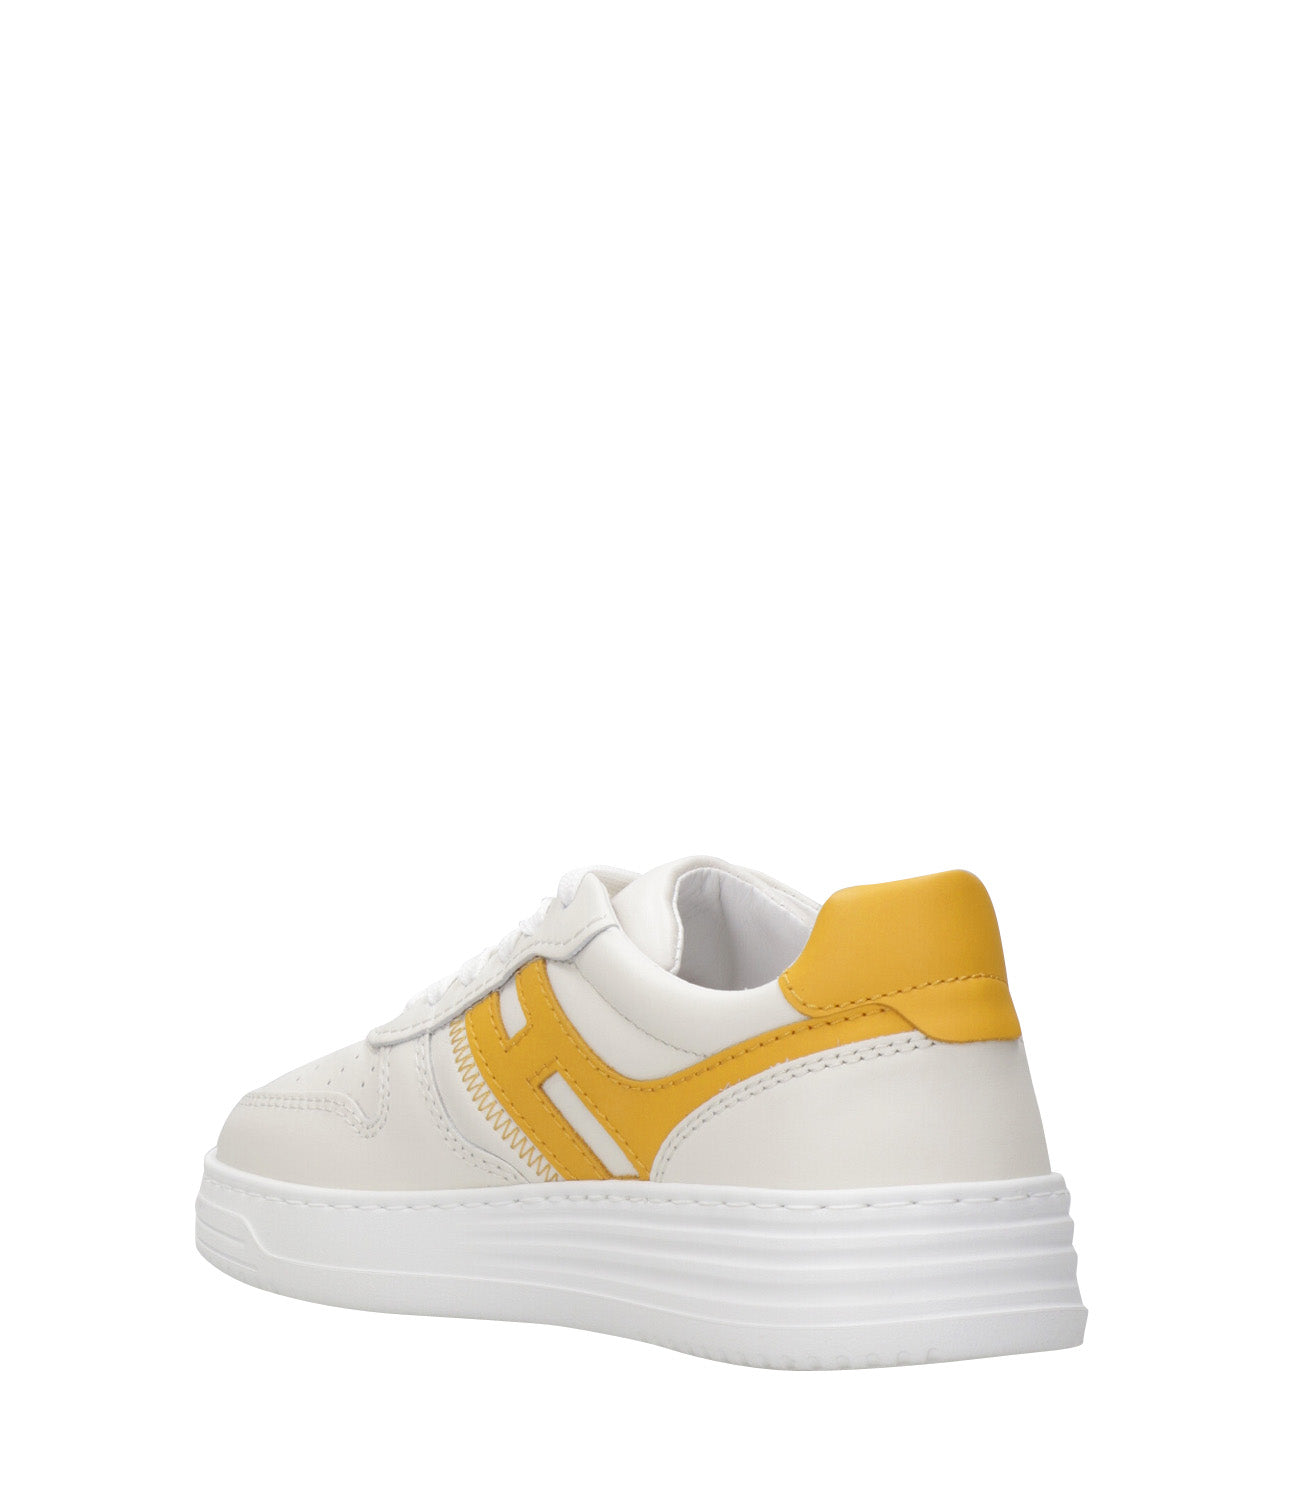 Hogan | Sneakers H630 Allacciato Bianco e Giallo